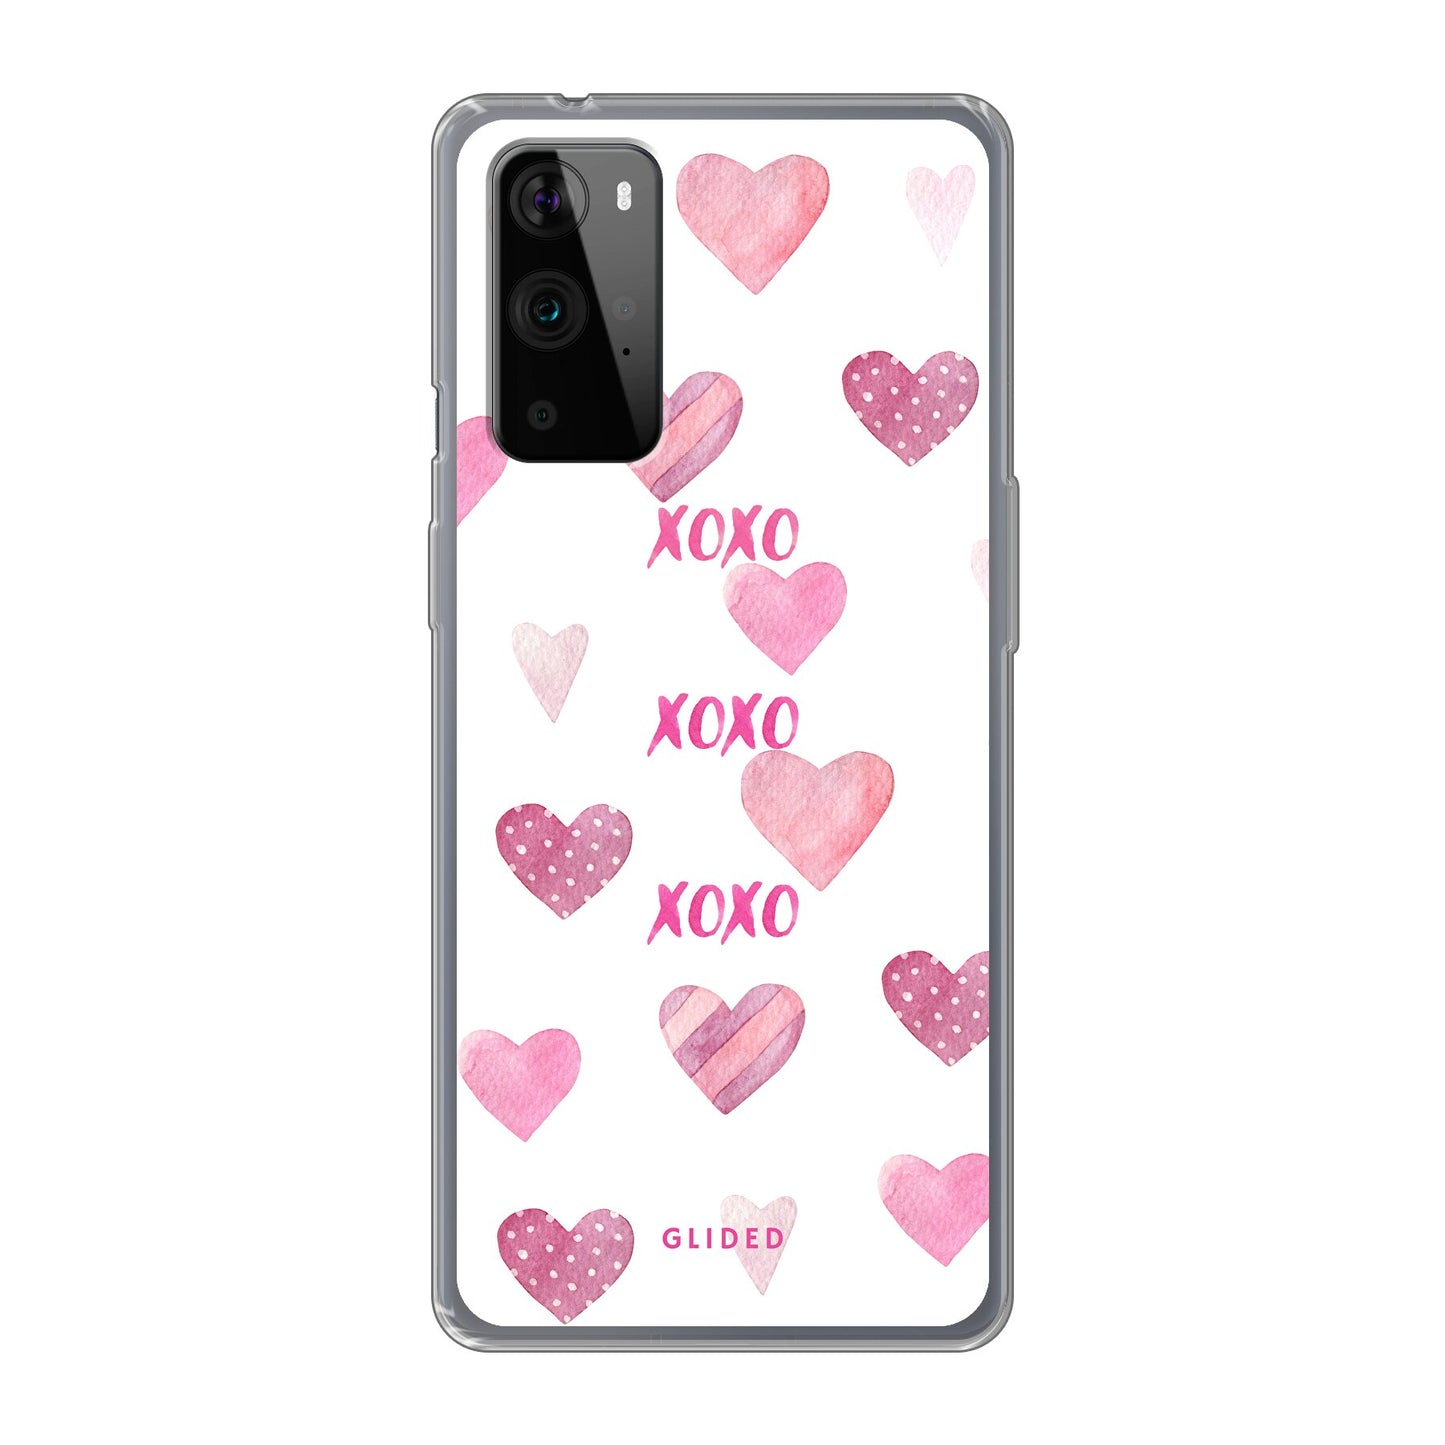 Xoxo - OnePlus 9 Pro - Soft case